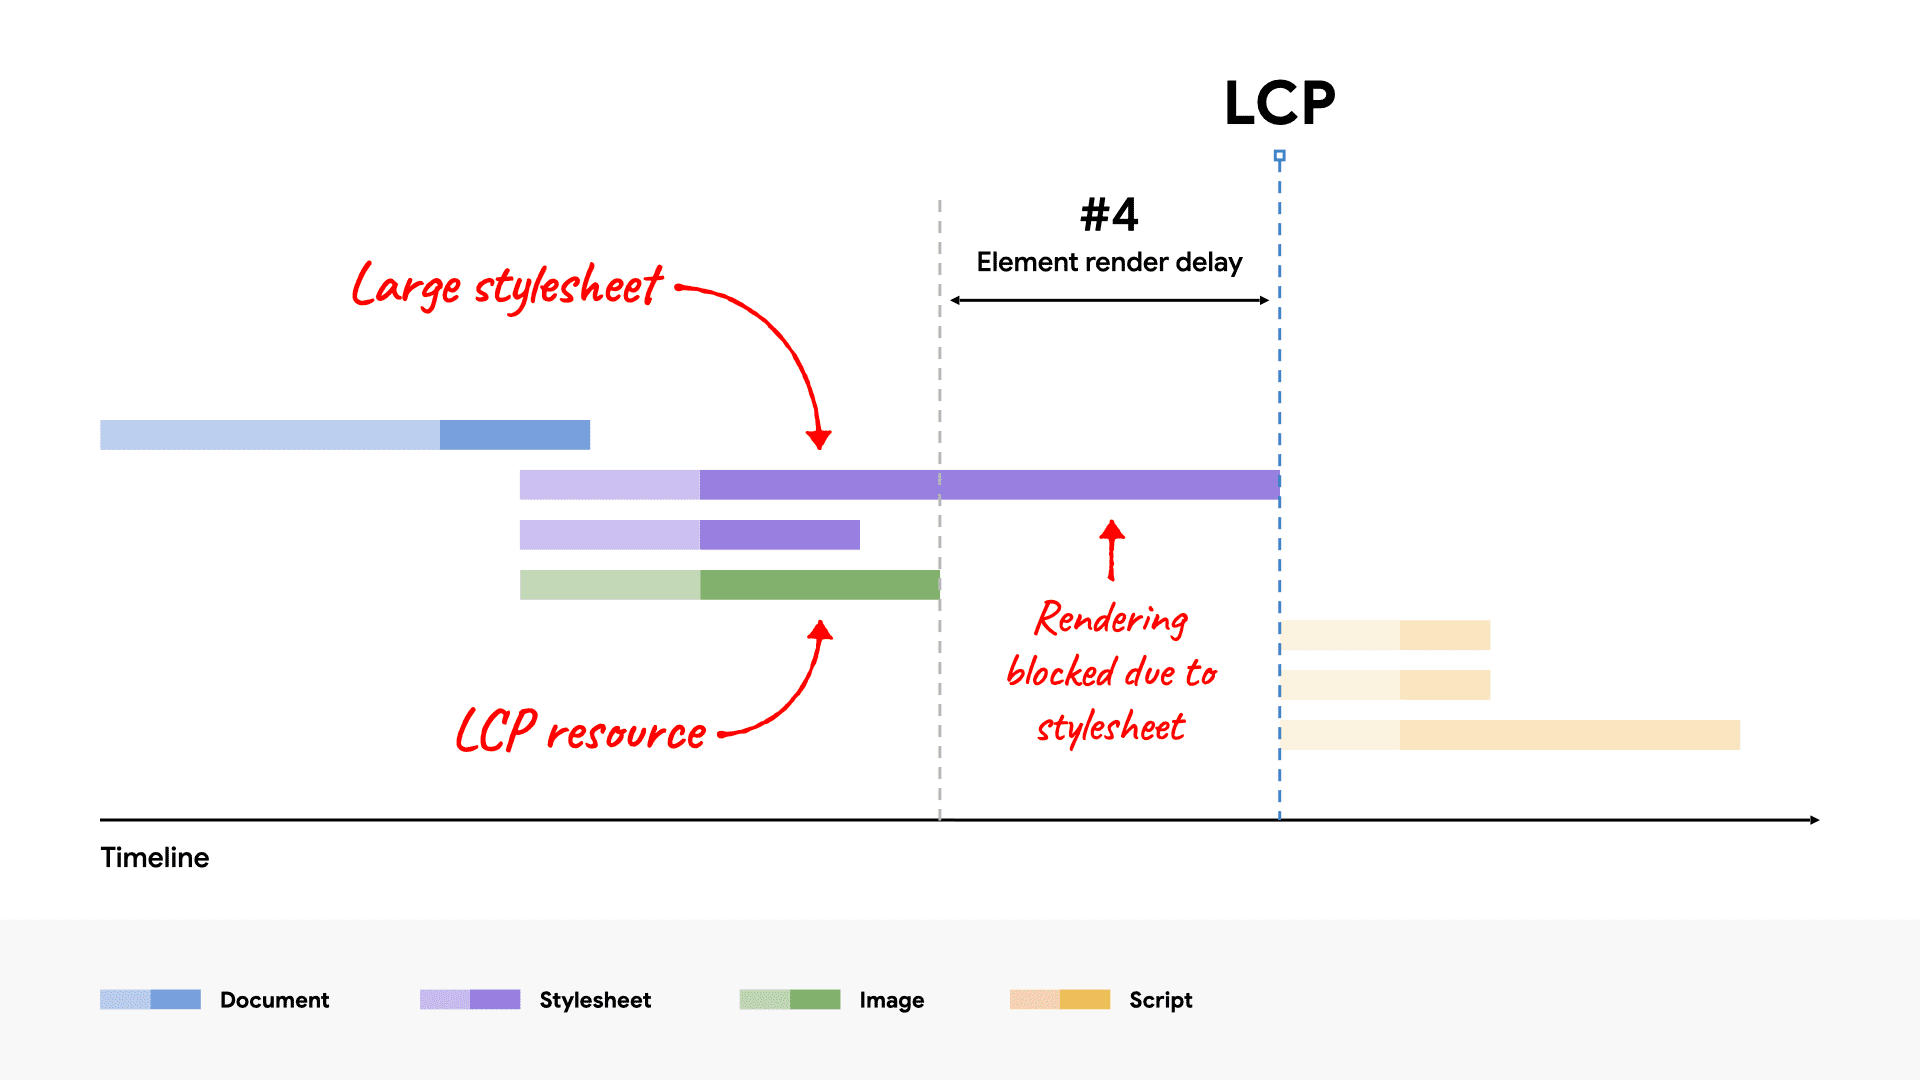 תרשים מפל של רשת שמציג קובץ CSS גדול שחוסם את הרינדור של רכיב ה-LCP כי זמן הטעינה נמשך יותר זמן ממשאב ה-LCP